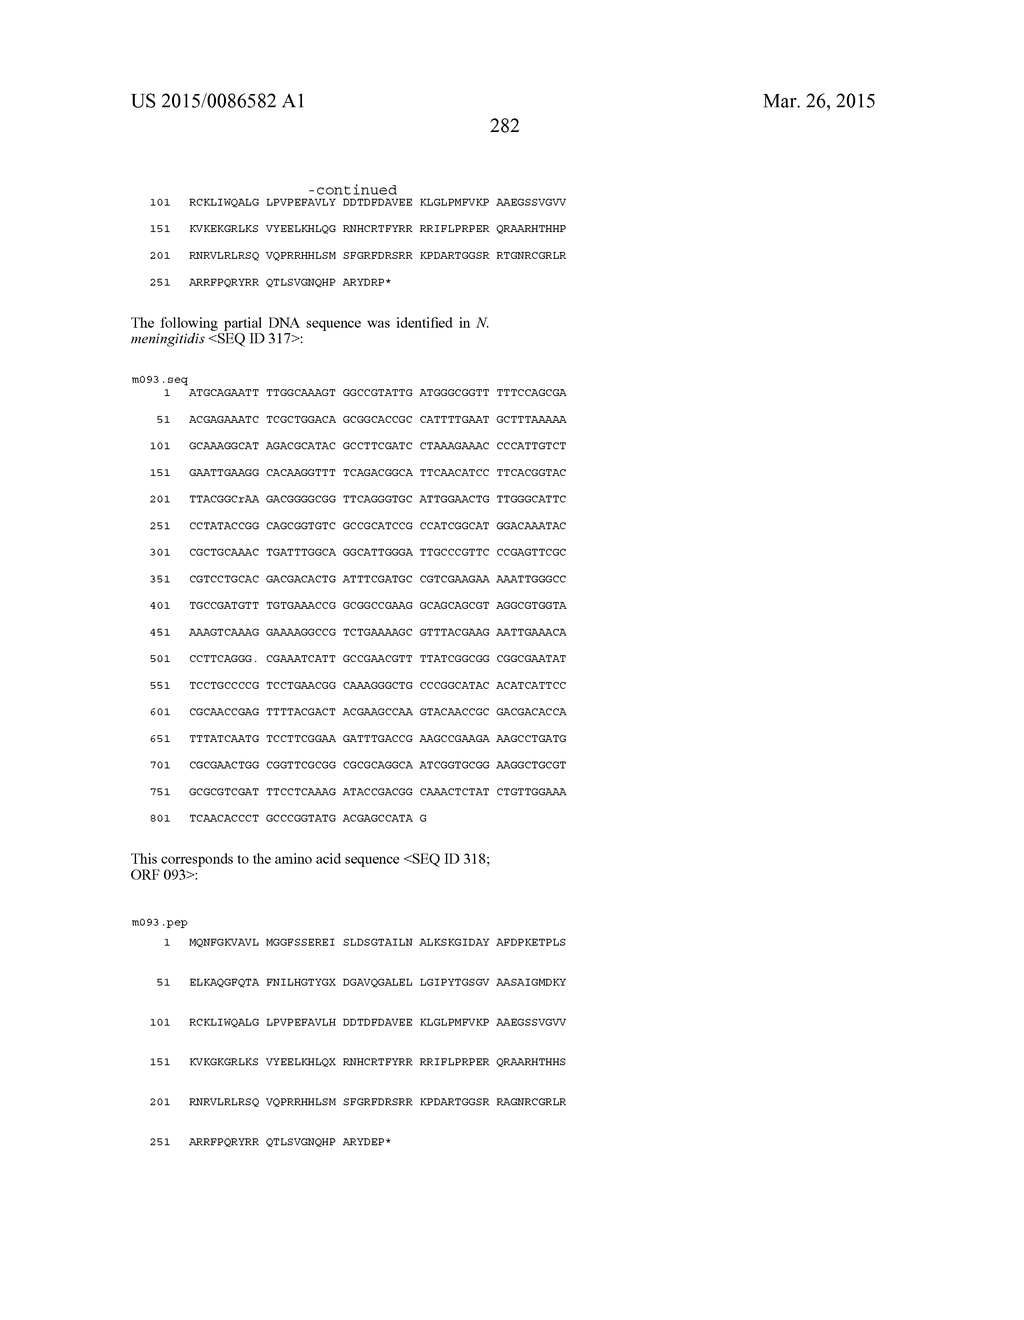 NEISSERIA MENINGITIDIS ANTIGENS AND COMPOSITIONS - diagram, schematic, and image 314